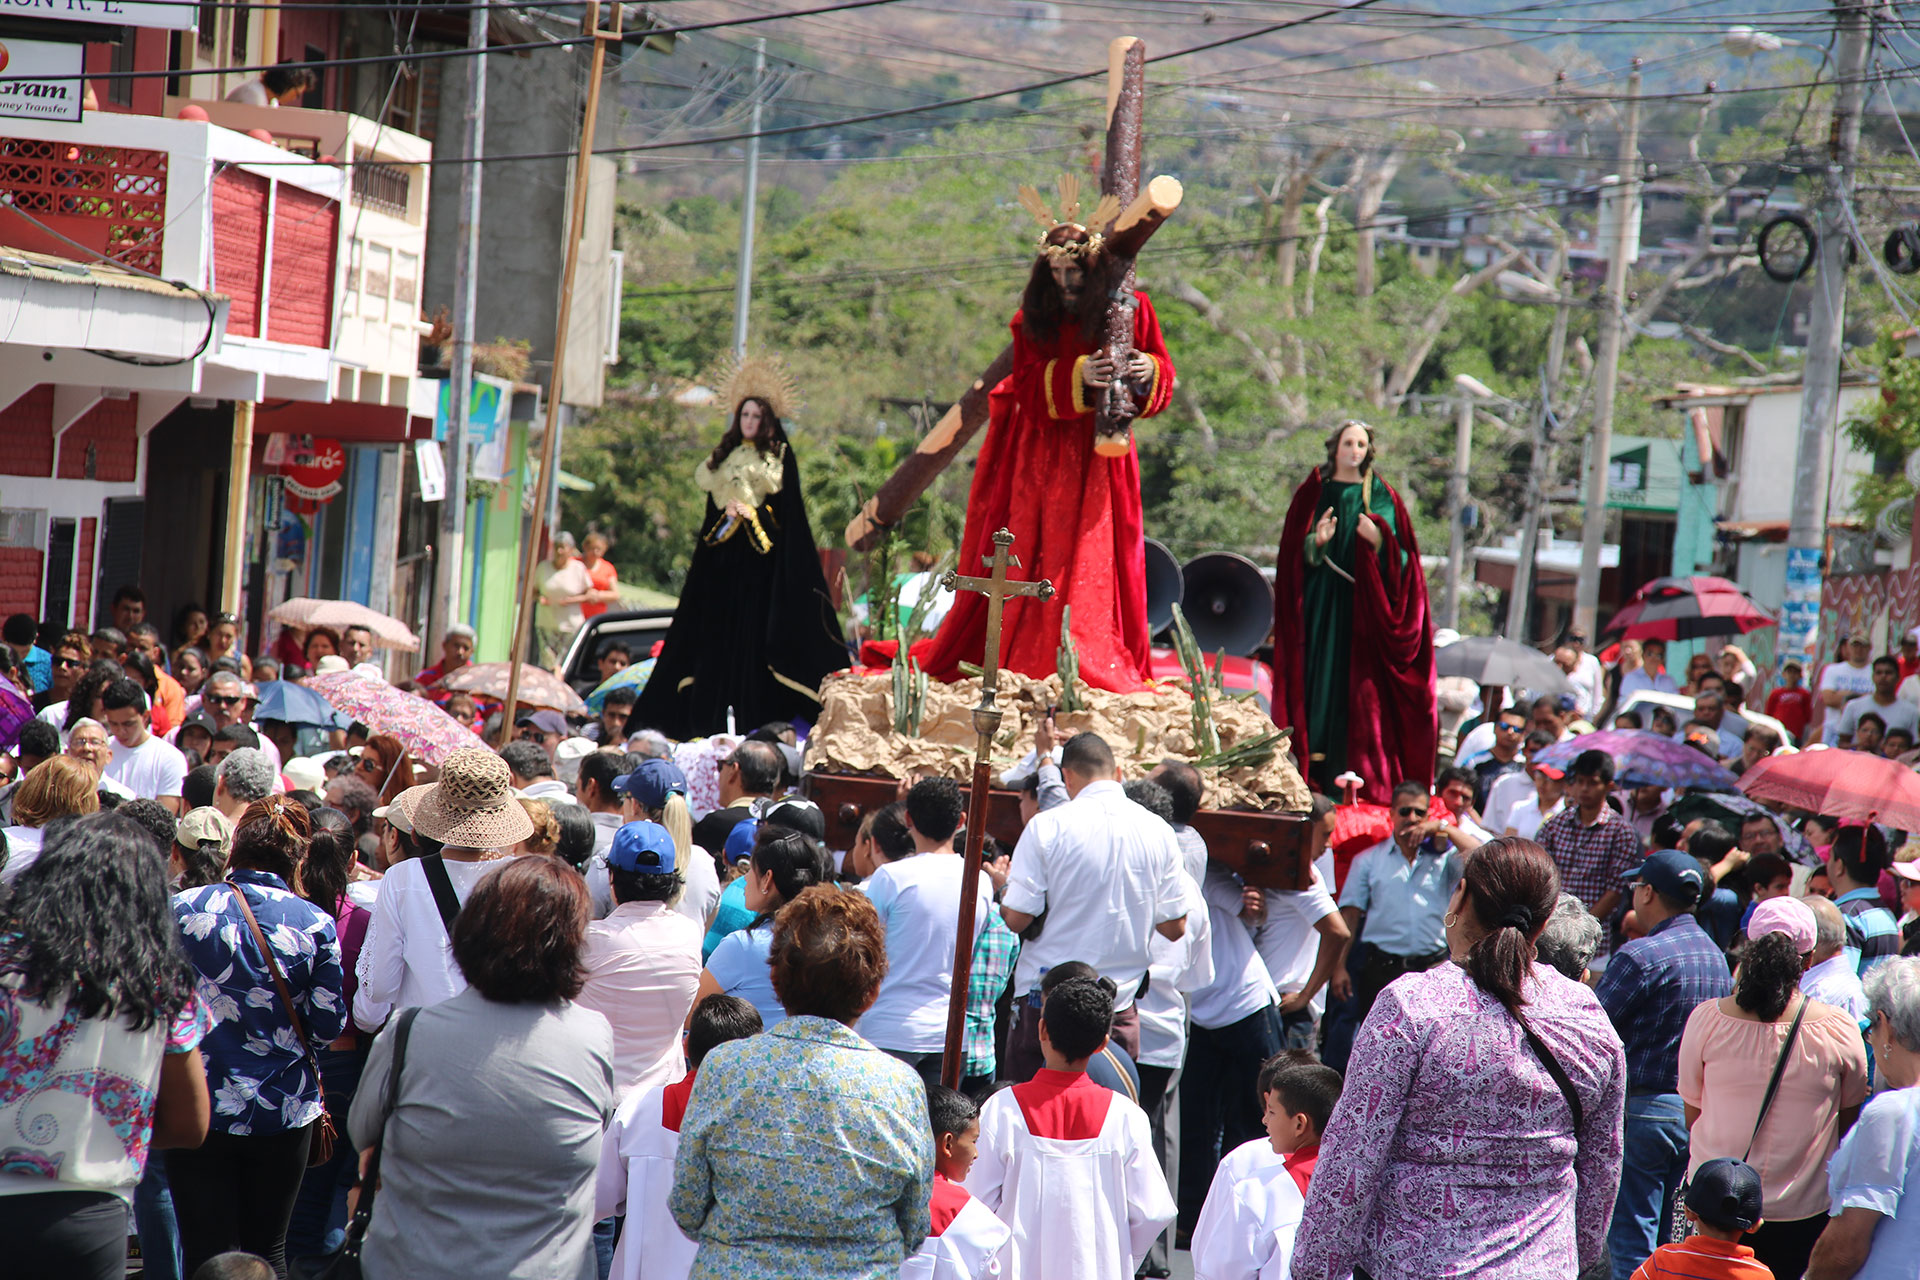 Los tradicionales viacrucis de Semana Santa están prohibidos en Nicaragua "por razones de seguridad", según ha notificado la Policía a los sacerdotes. (Foto archivo La Prensa)